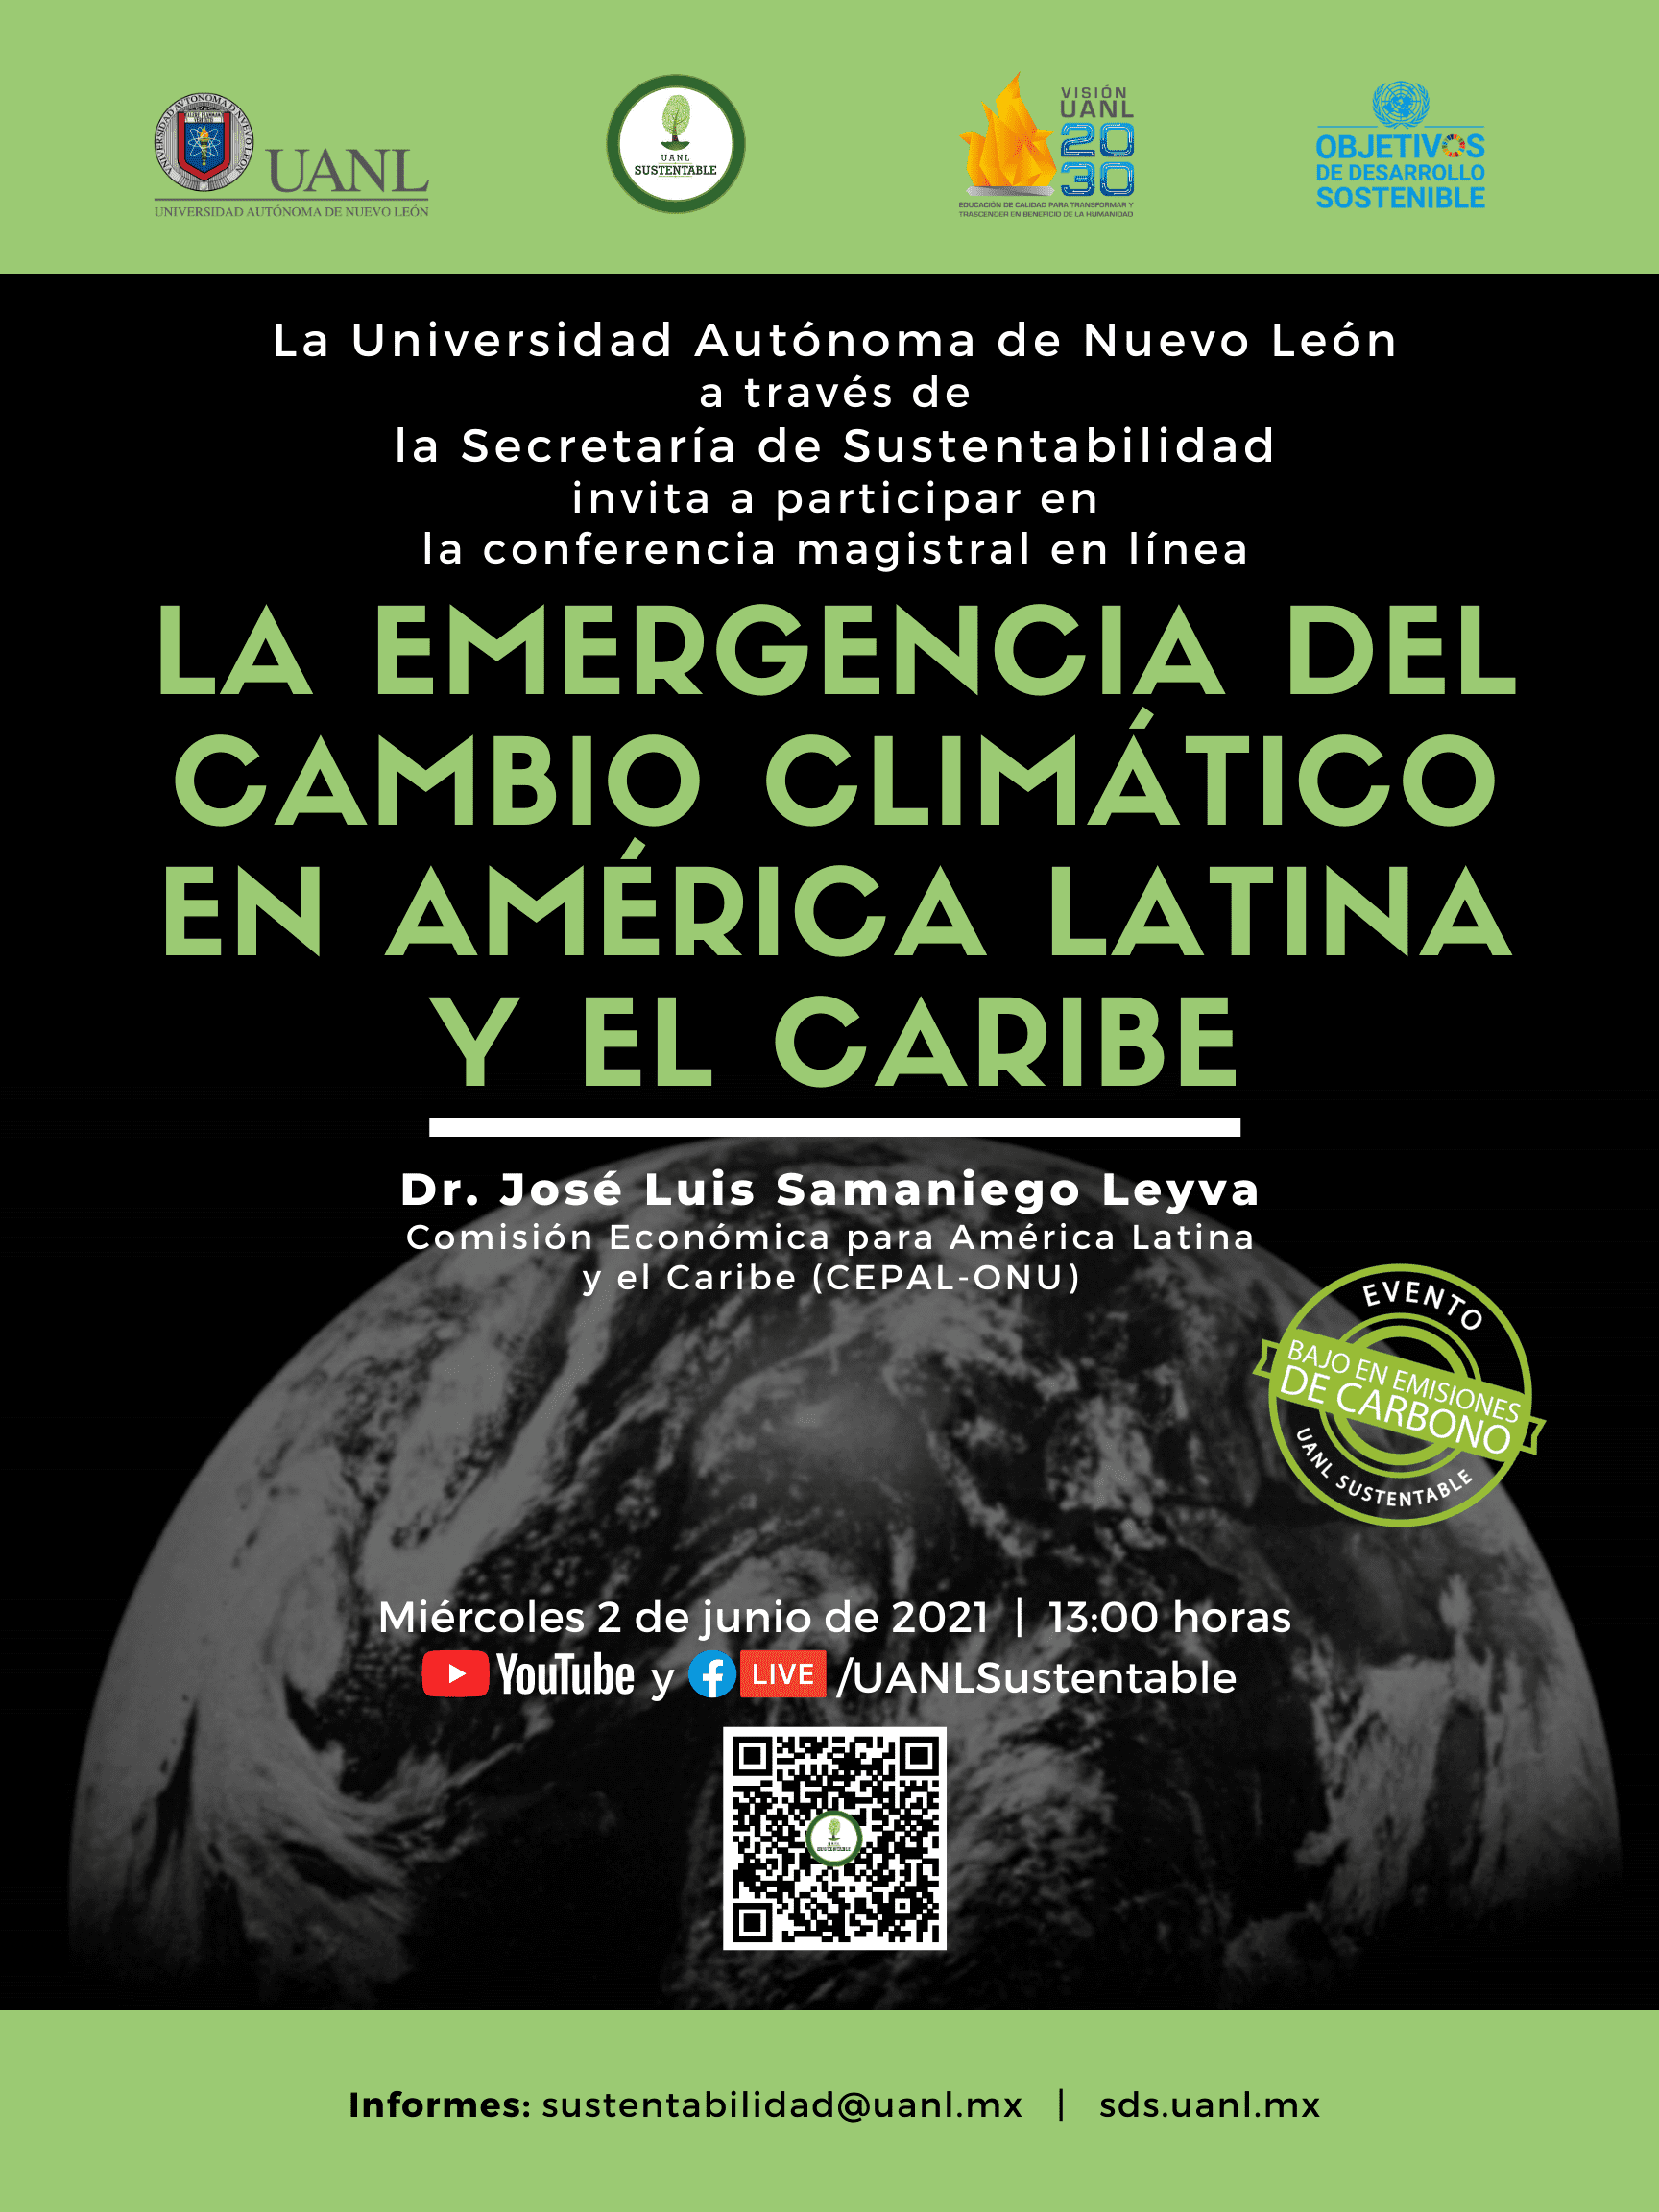 La emergencia del cambio climático en América Latina y el Caribe